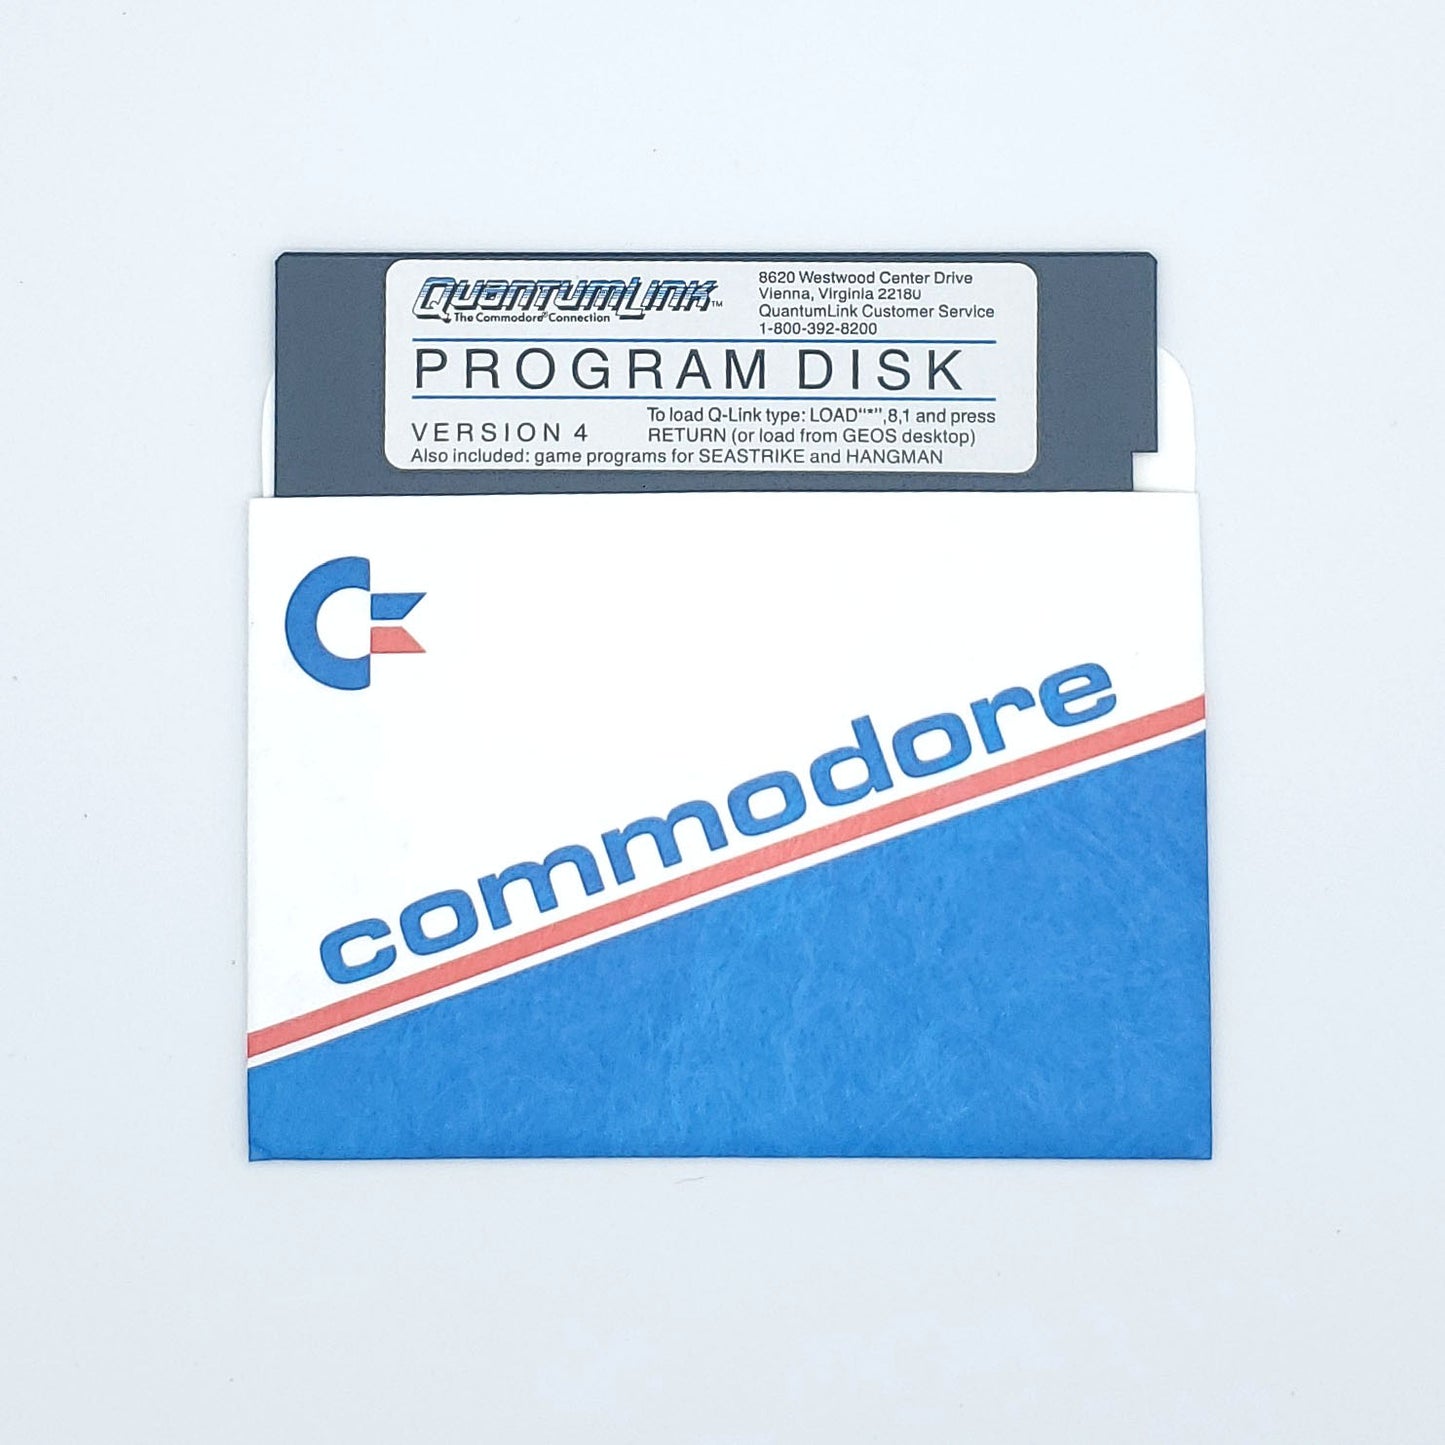 Commodore Modem 1200 In Box